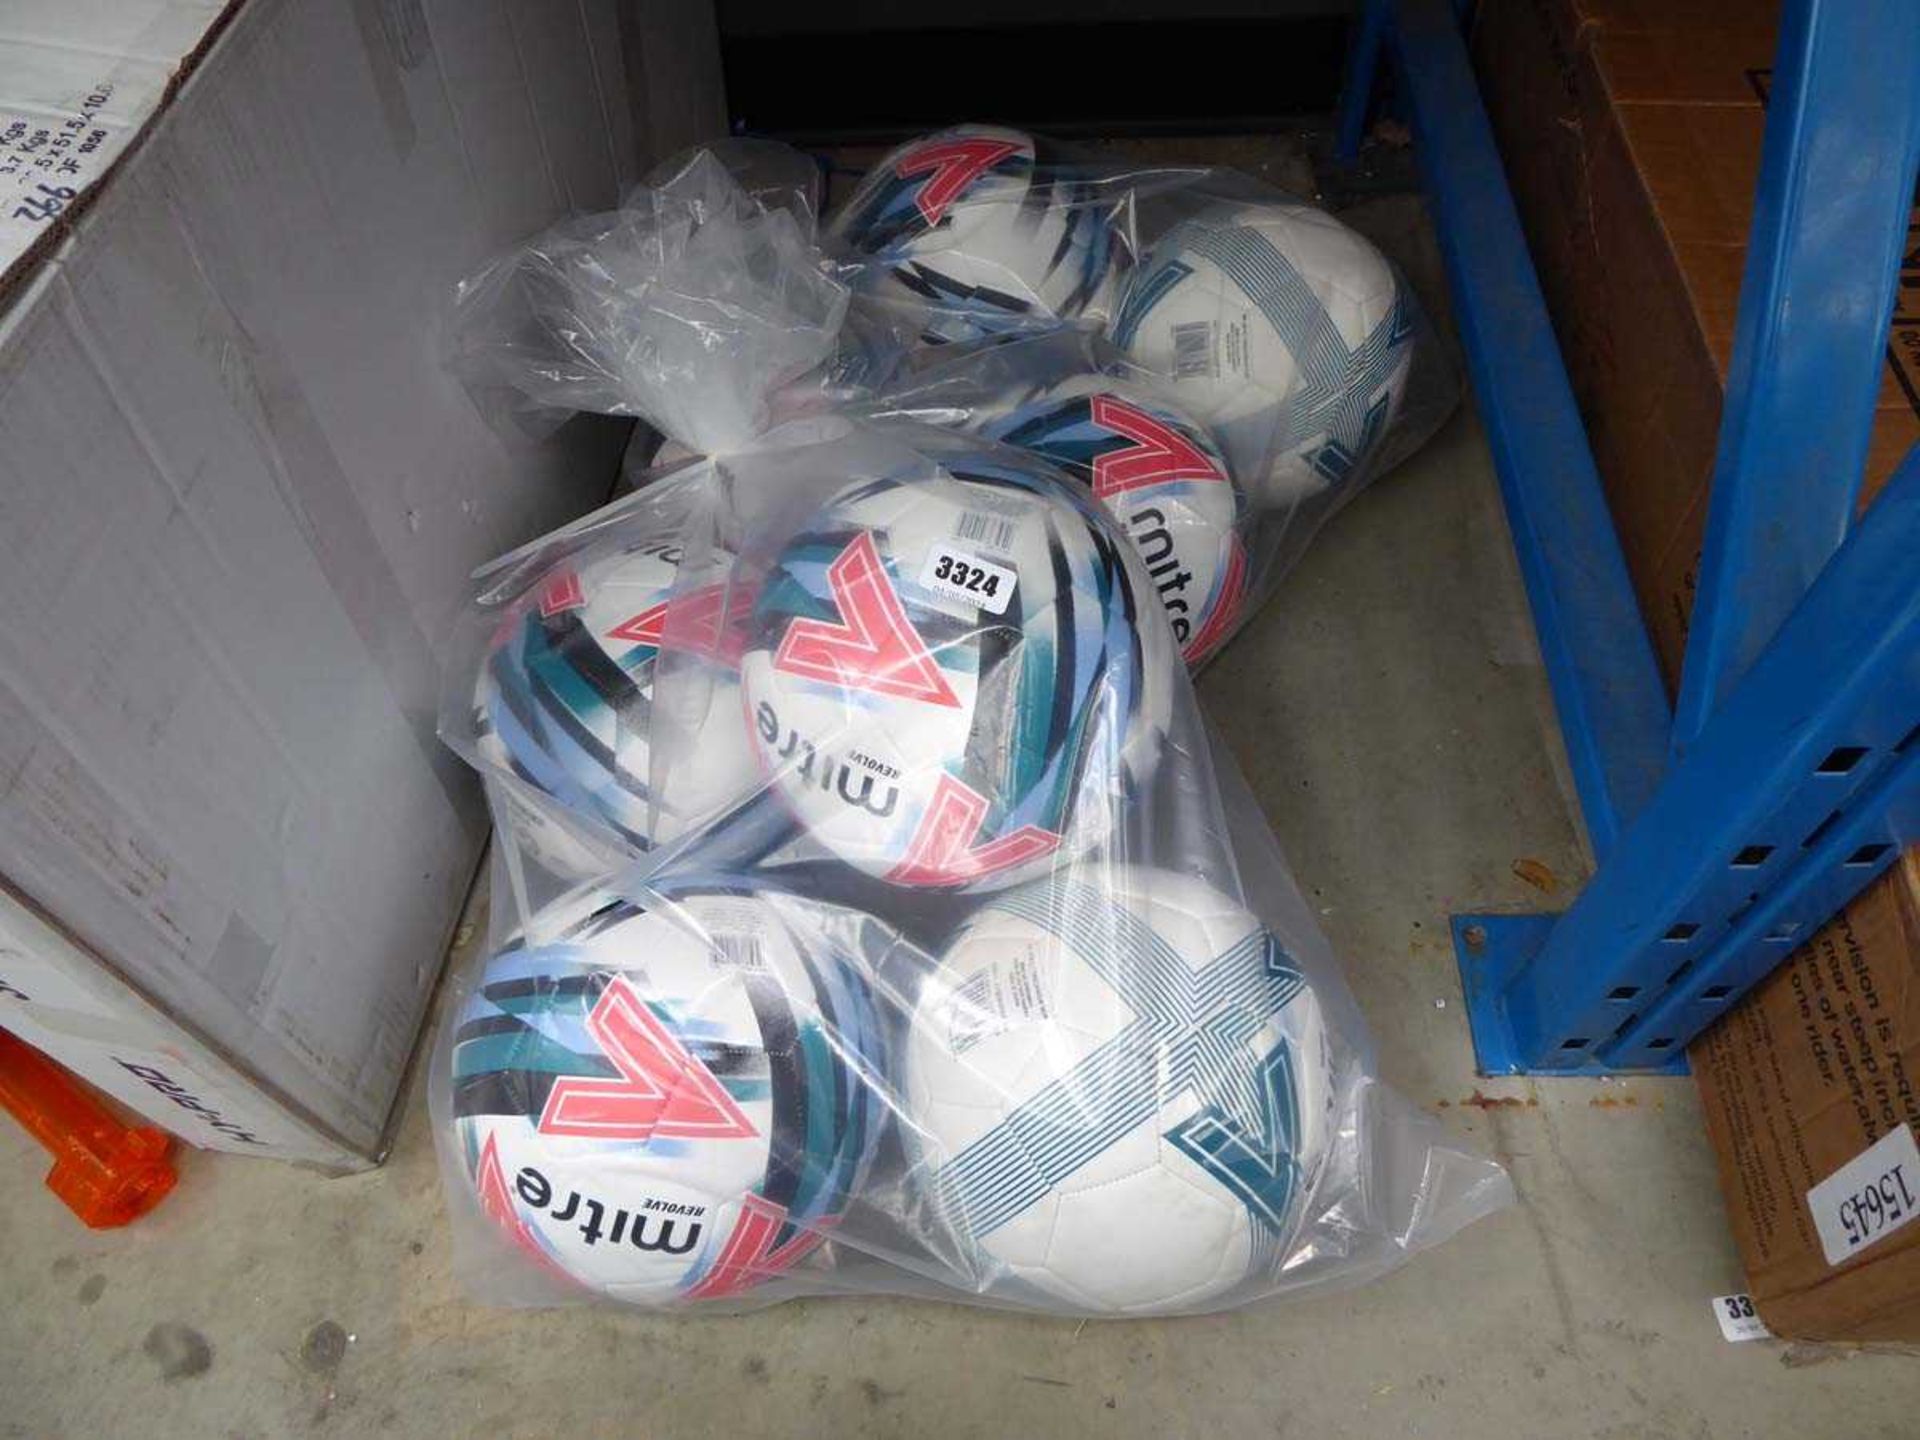 2 bags of Mitre footballs